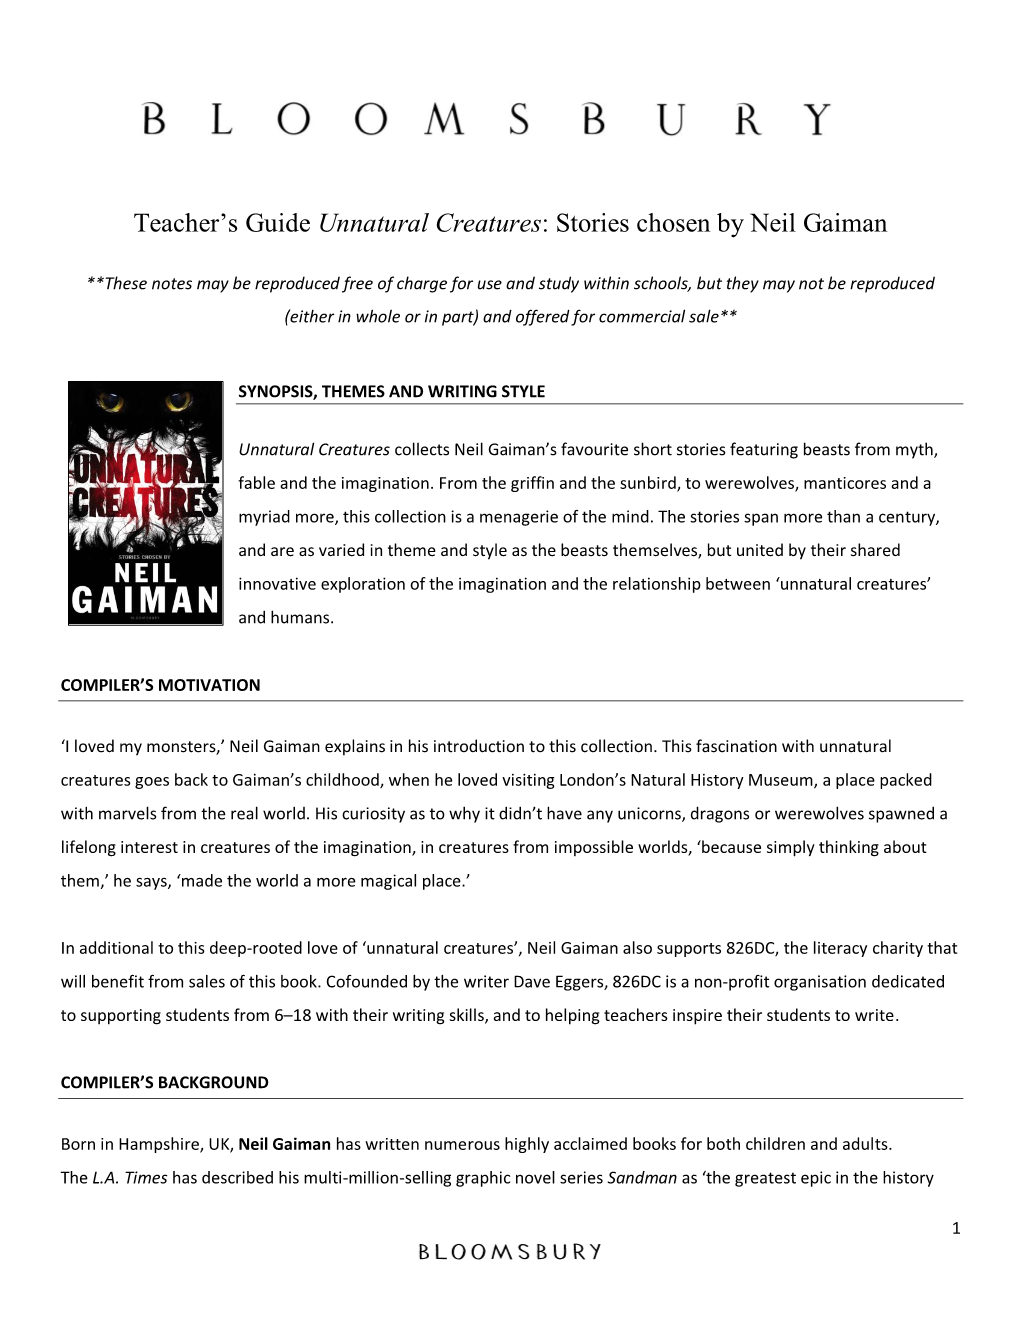 Teacher's Guide Unnatural Creatures: Stories Chosen by Neil Gaiman